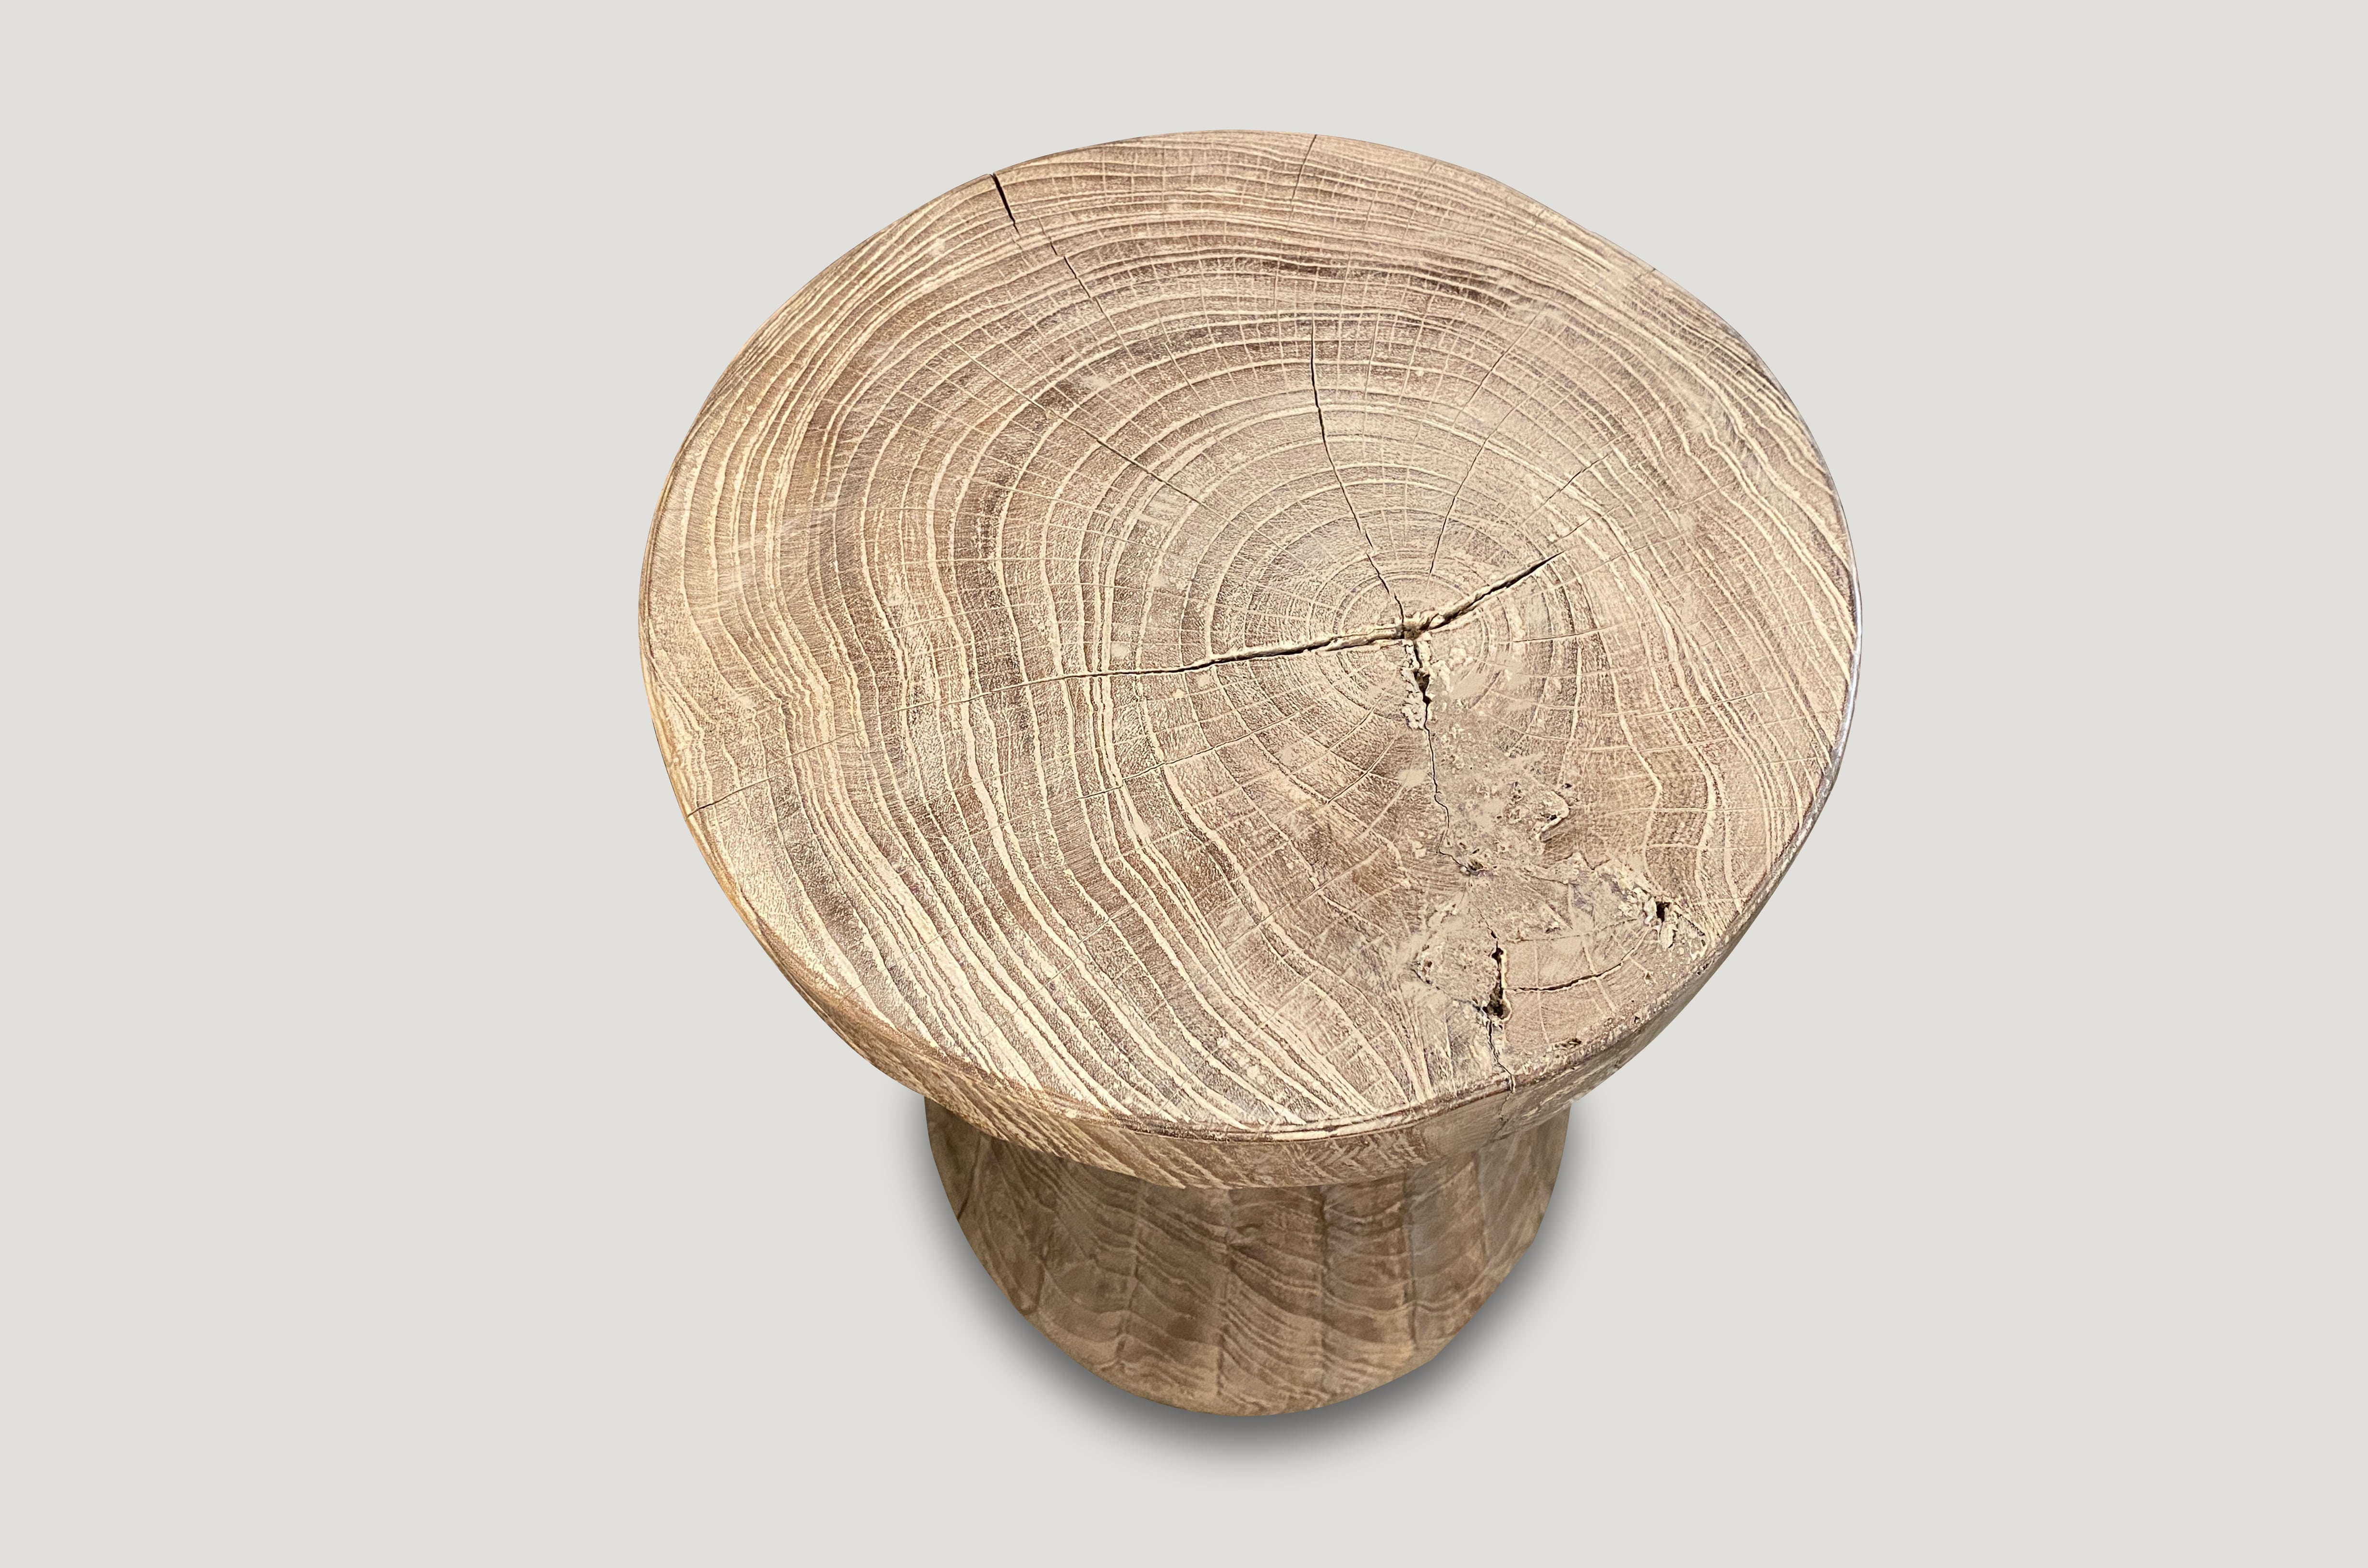 bevelled teak wood stool